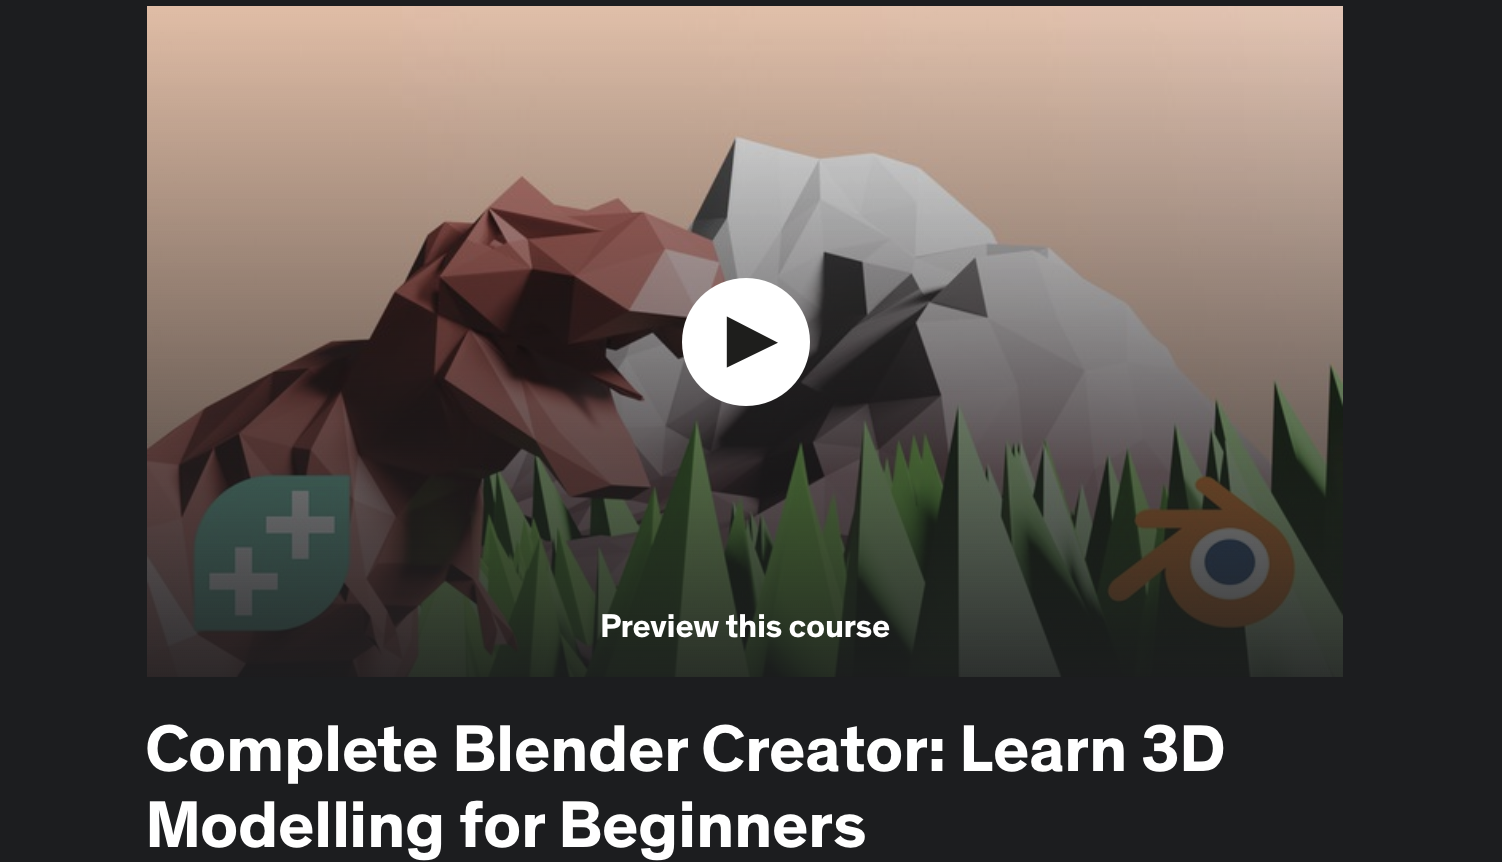 Complete Blender Creator